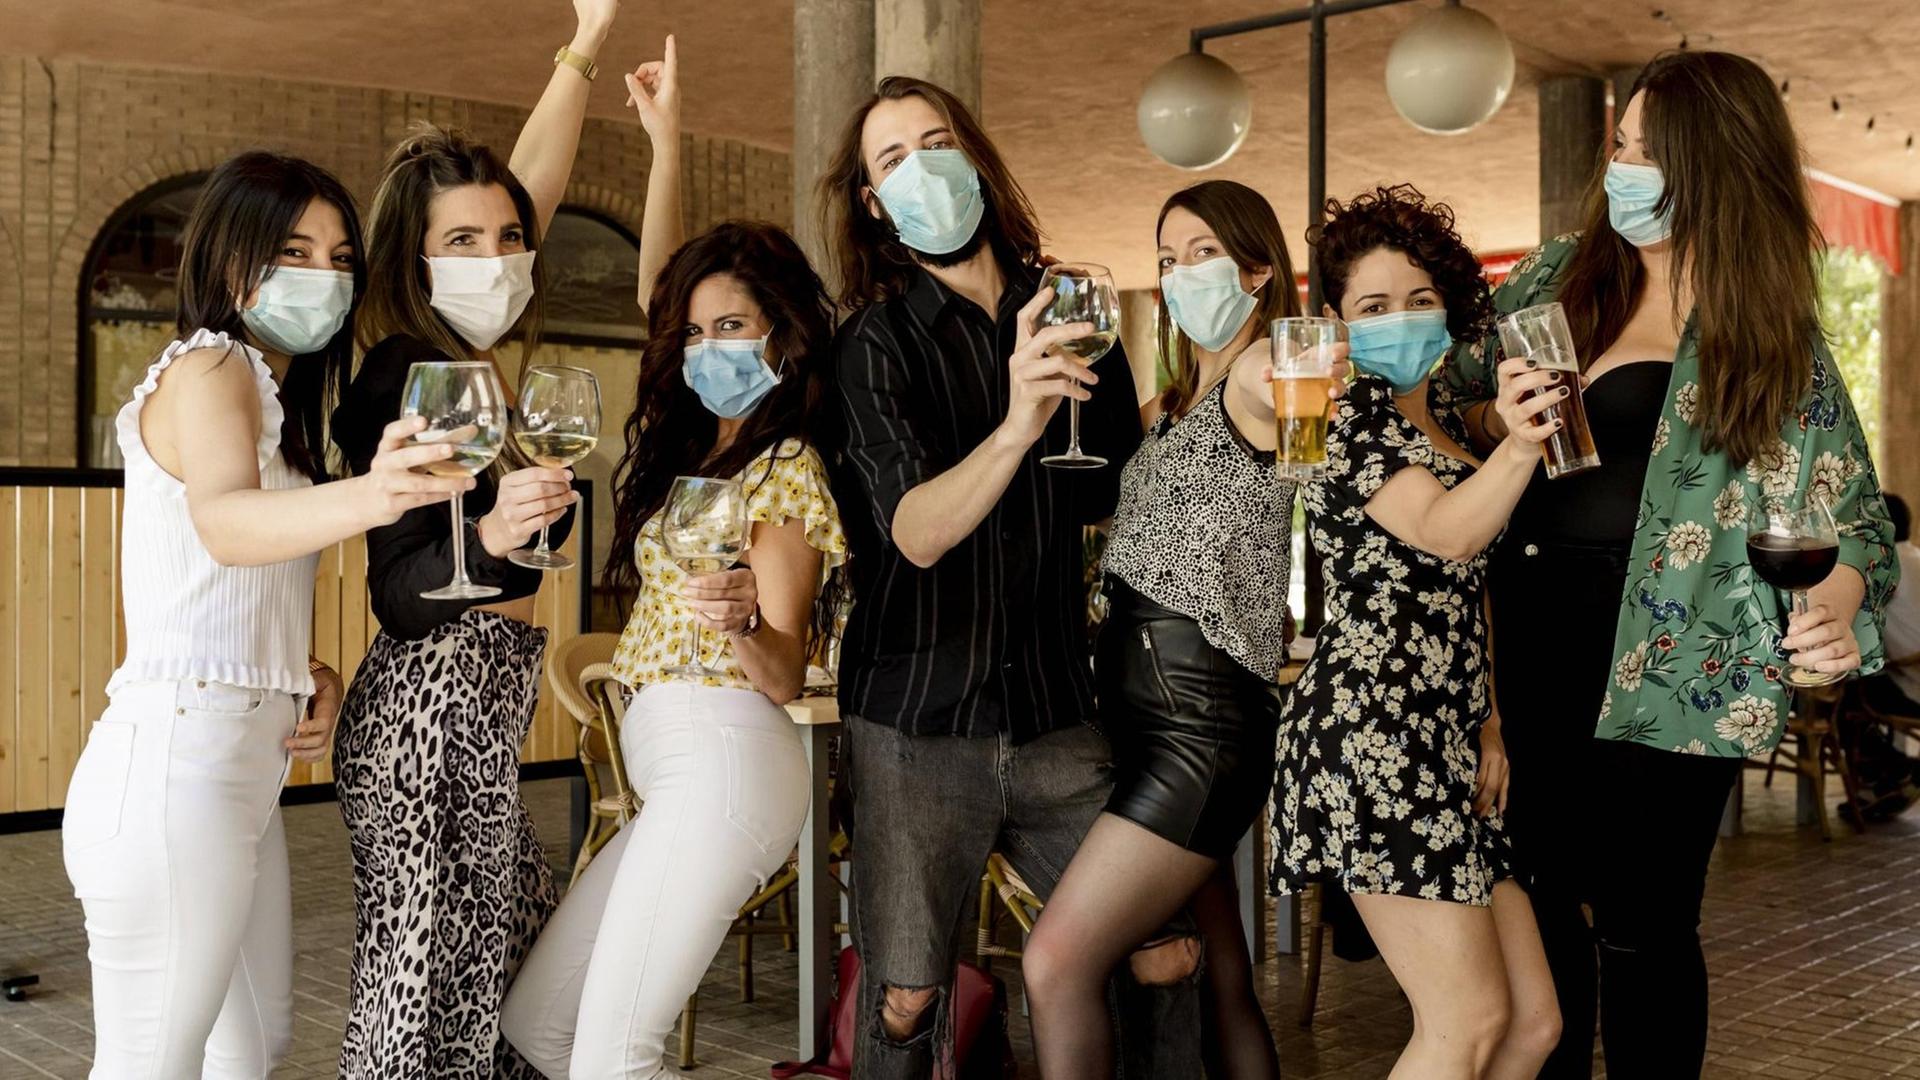 Junge Leute feiern bei einer Party und tragen einen Mund-Nasen-Schutz gegen eine mögliche Infektion.